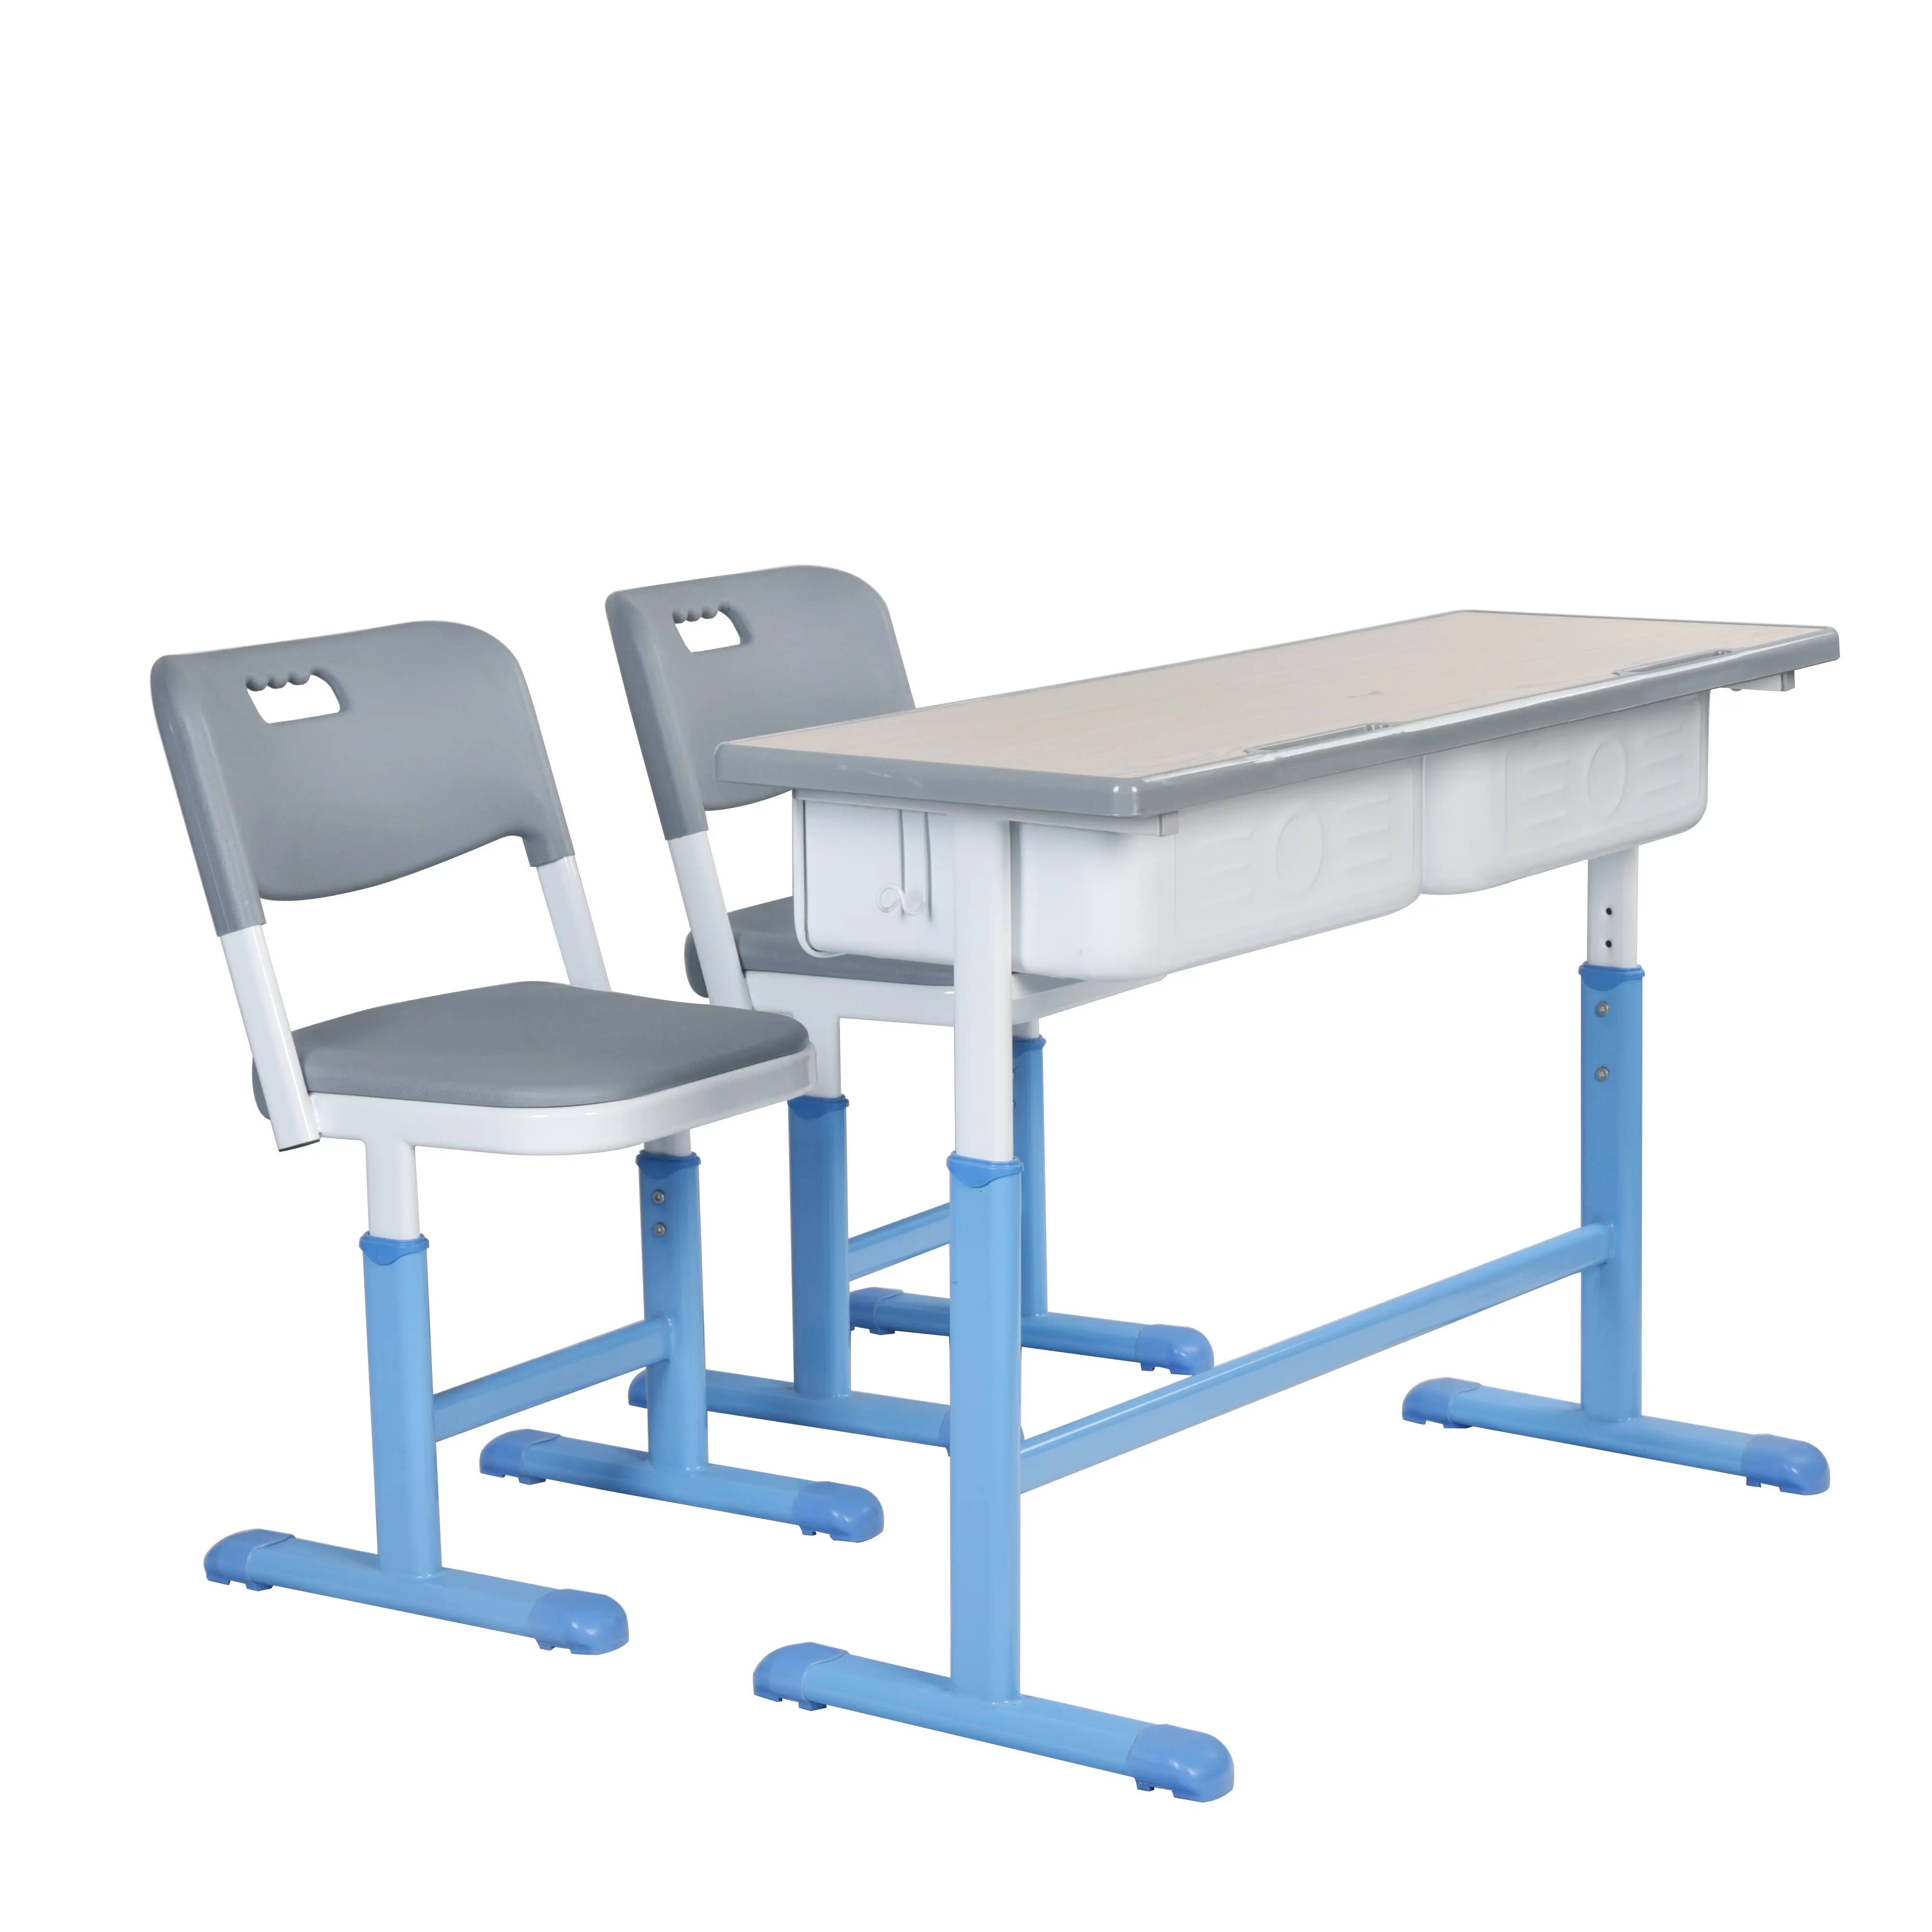 Campione gratuito scrivania e sedia per aula per studenti scolastici regolabili in altezza durevoli set di mobili per la scuola usati in metallo moderno disponibile